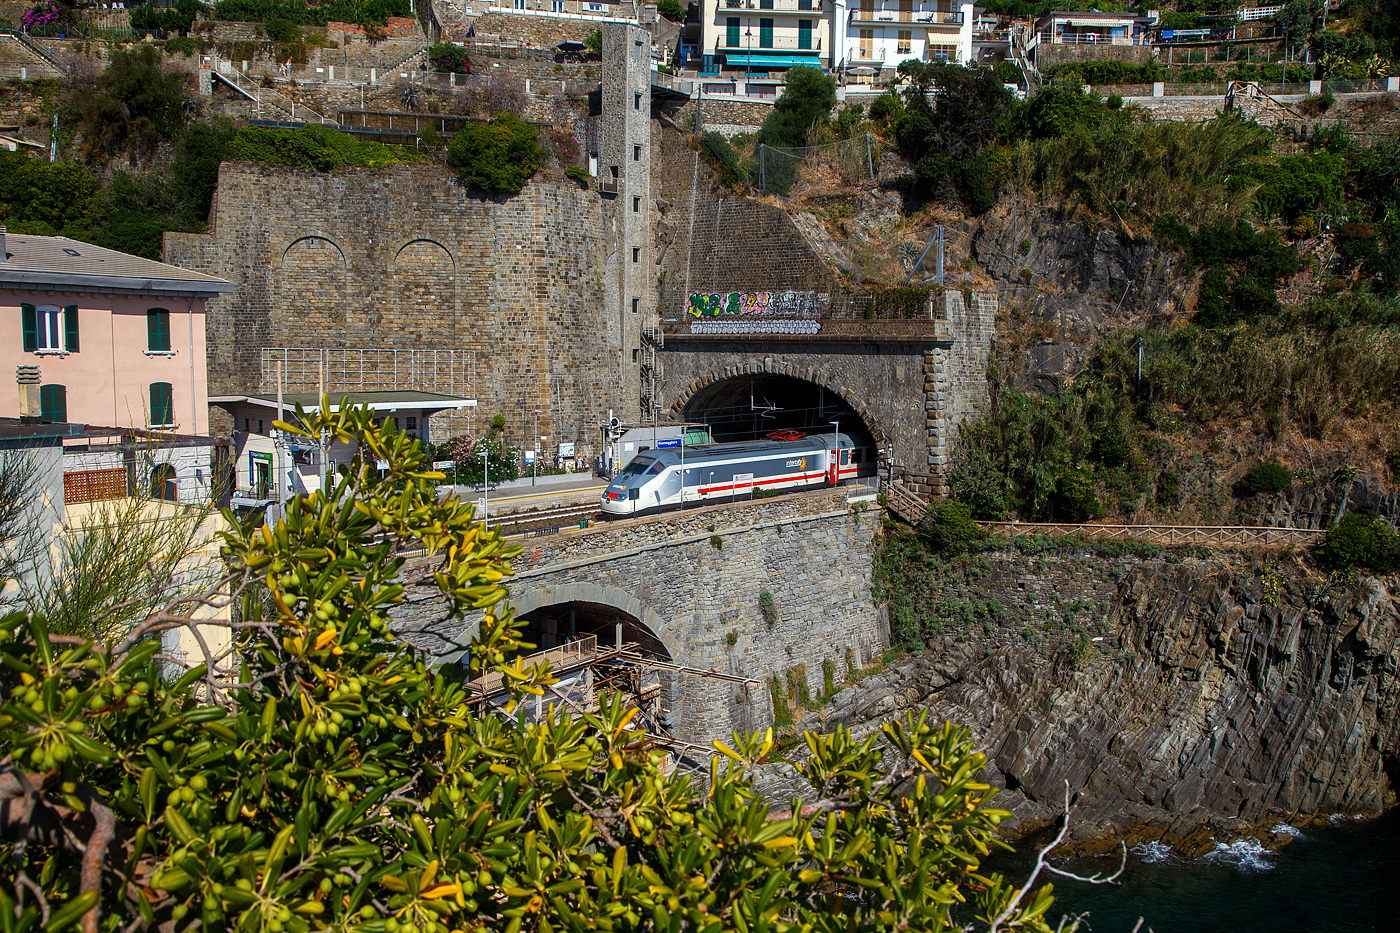 Ein Trenitalia Intercity (IC) rauscht im Sandwich zweier E.414 (ehemalige Triebköpfe E.404 A der ersten ETR 500 – Monotensione) durch den Cinque Terre Bahnhof Riomaggiore in Richtung Genua (Genova).

Vor dem Zuganfang auf der anderen Bahnsteigseite sieht am den Eingang von dem Fußgänger-Tunnel vom Bahnhof zum Zentrum von Riomaggiore. Dieser führt durch den Eisenbahntunnel, ist aber abgegrenzt. 

Zudem sieht man hinten auch den hohen Lift (Aufzug), mit diesem kommt man auf den etliche Meter oben liegenden Weg. Der Lift ist aber in der Saison kostenpflichtig, aber er erspart etliche Treppenstufen oder einen gewaltigen Umweg.